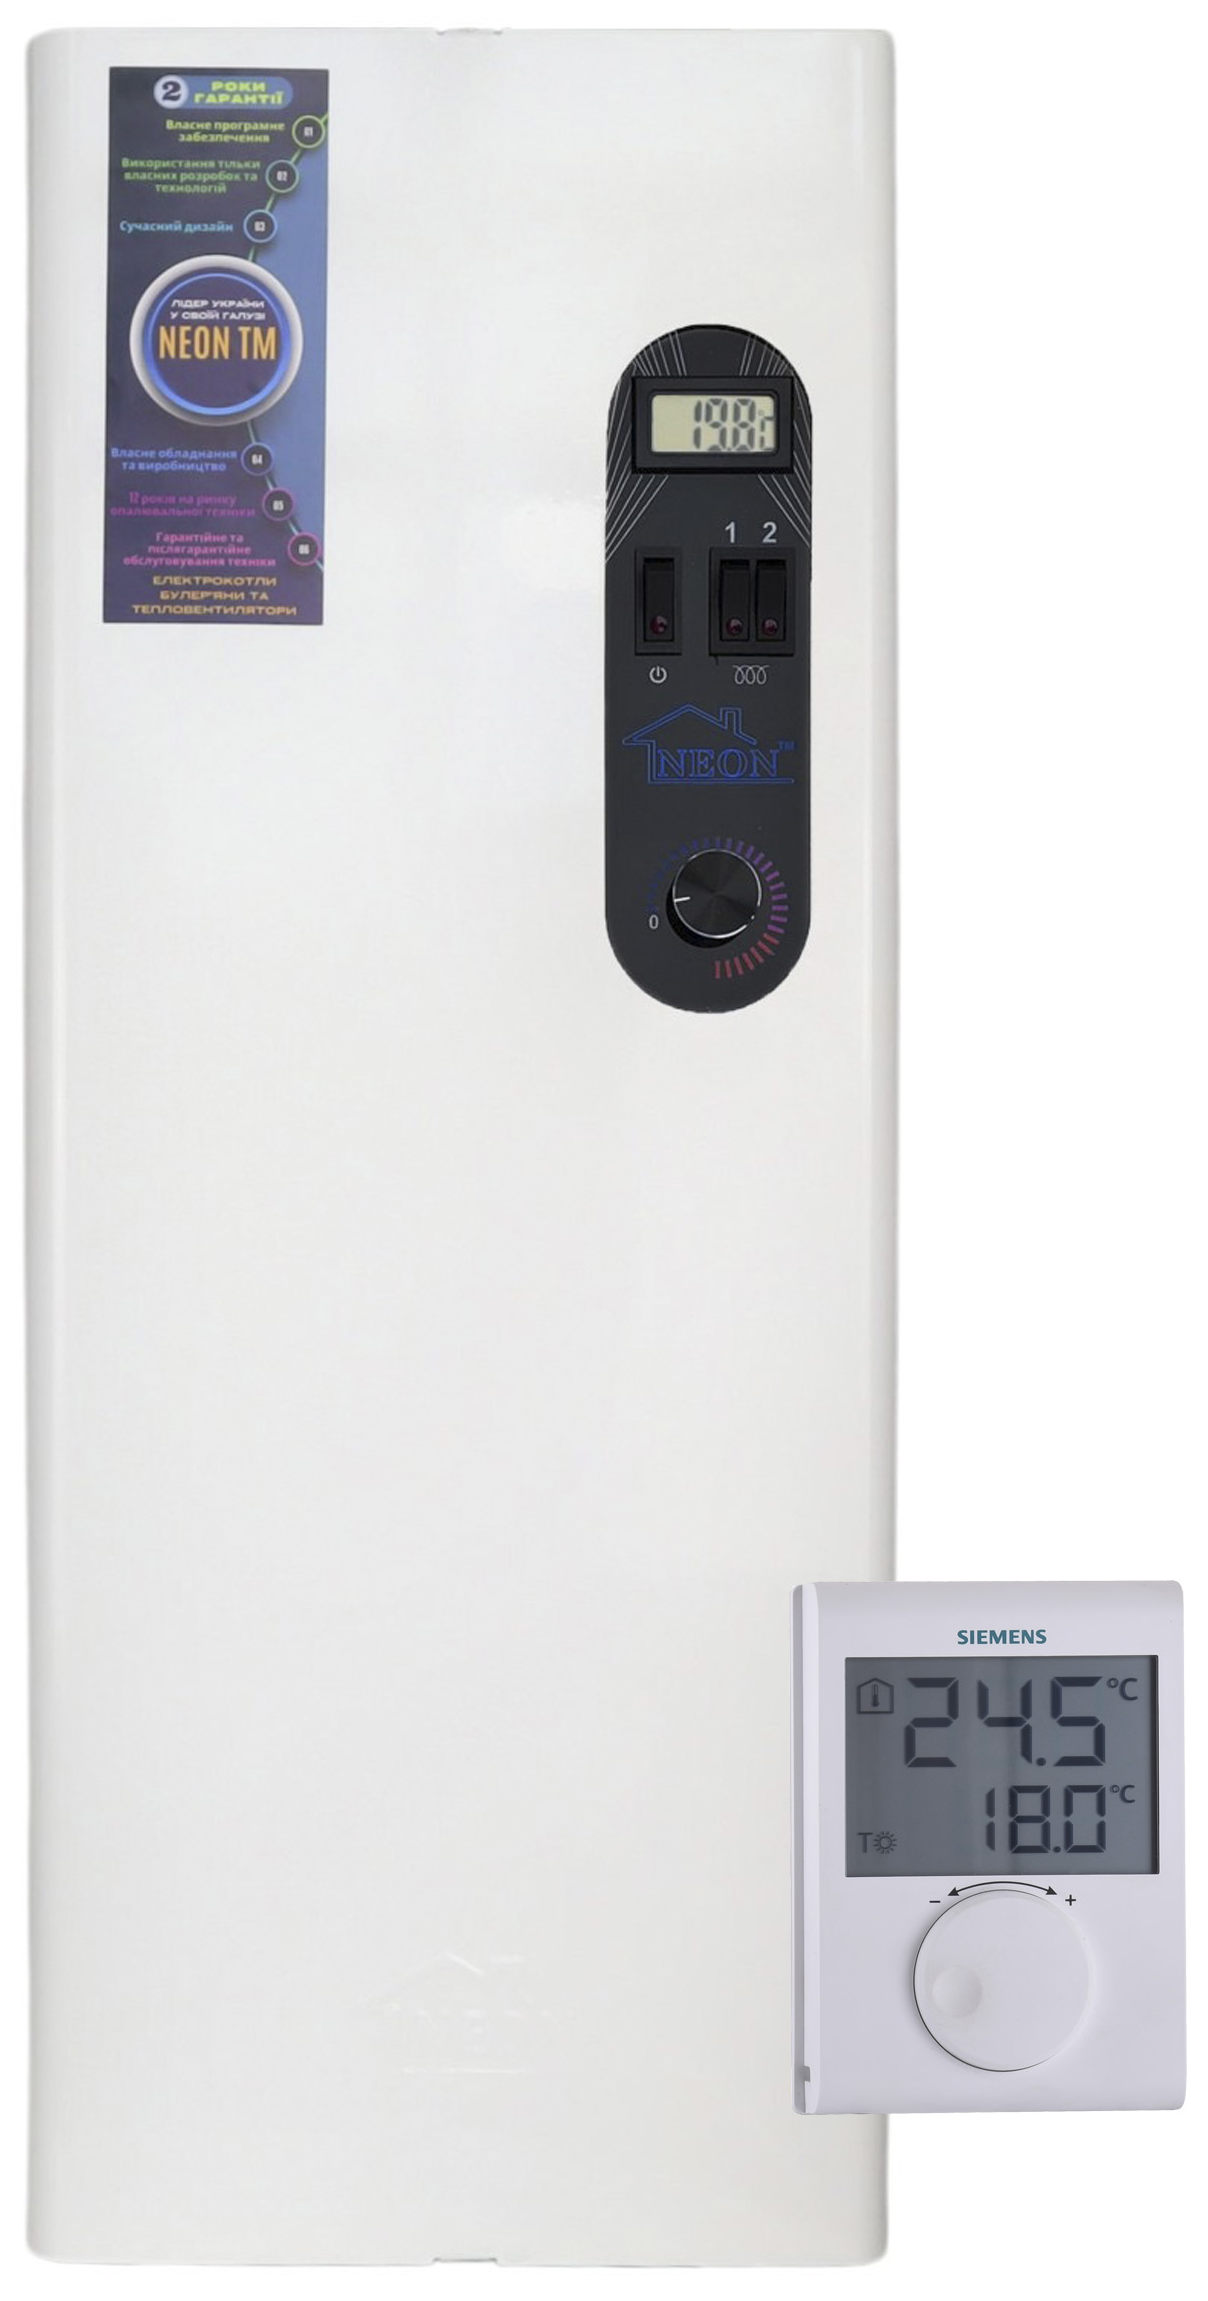 Электрический котел Neon Pro plus Advance 9 кВт с термостатом Siemens в интернет-магазине, главное фото